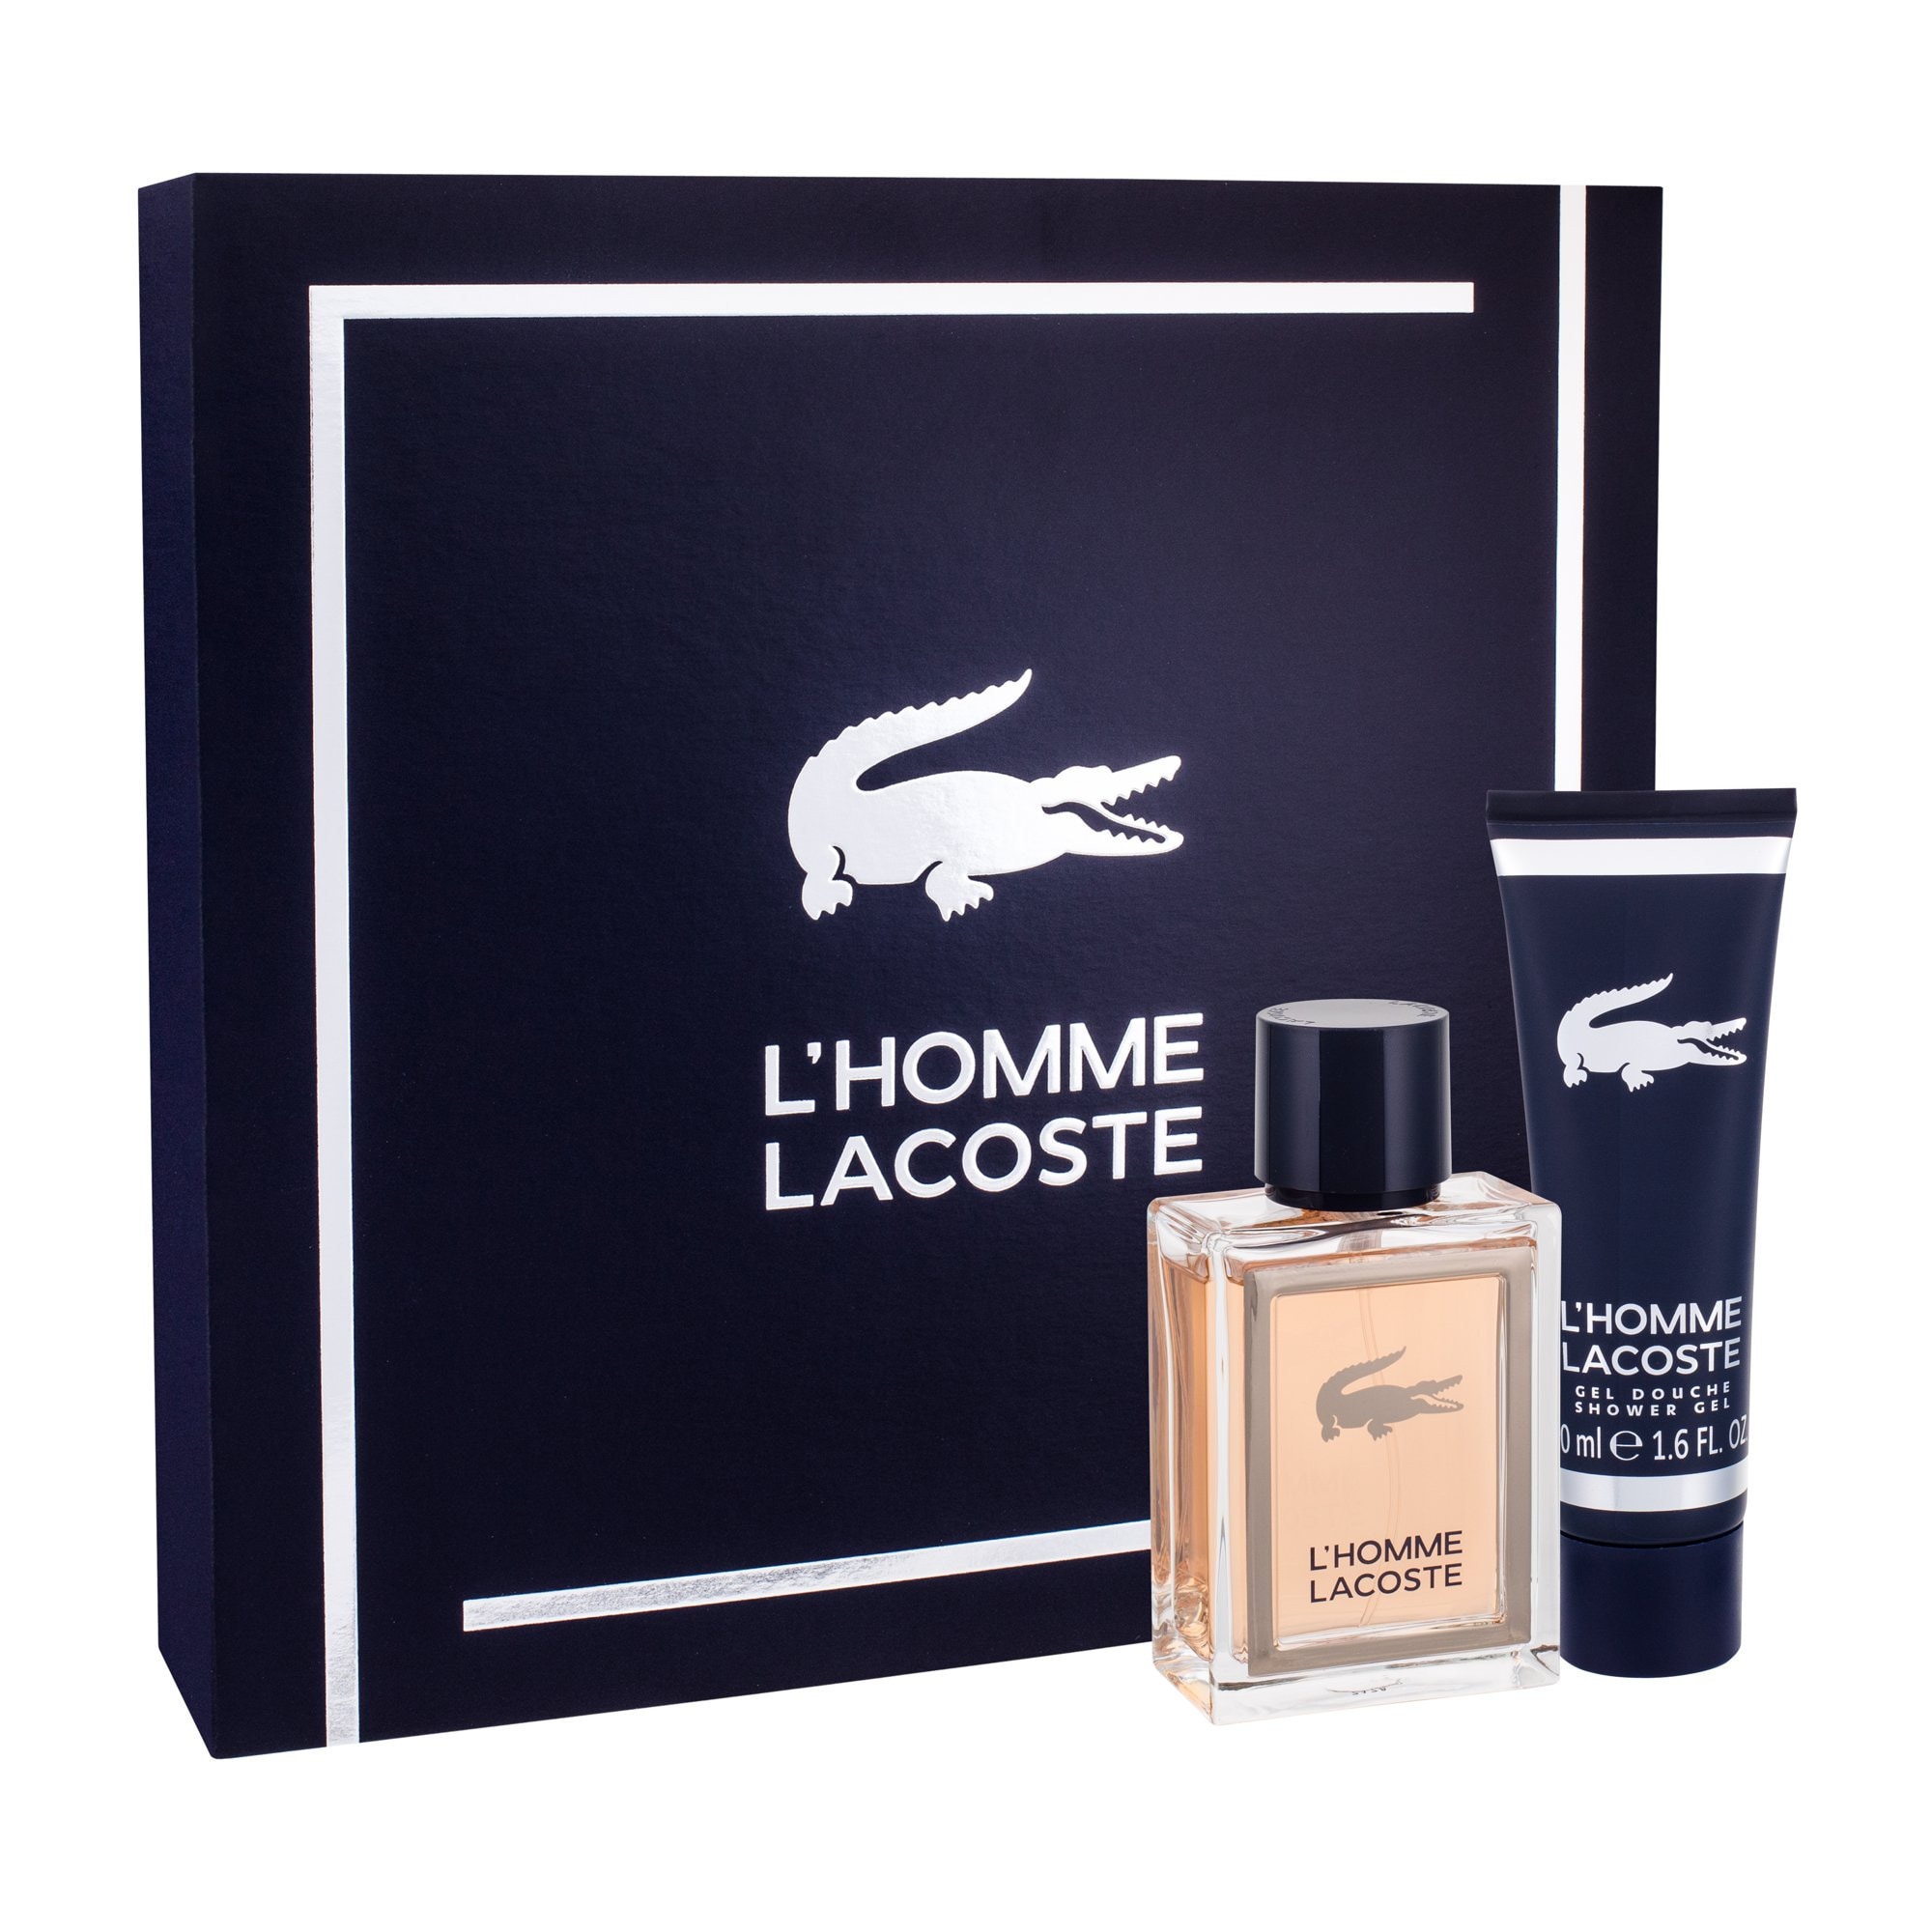 lacoste men's fragrance gift set